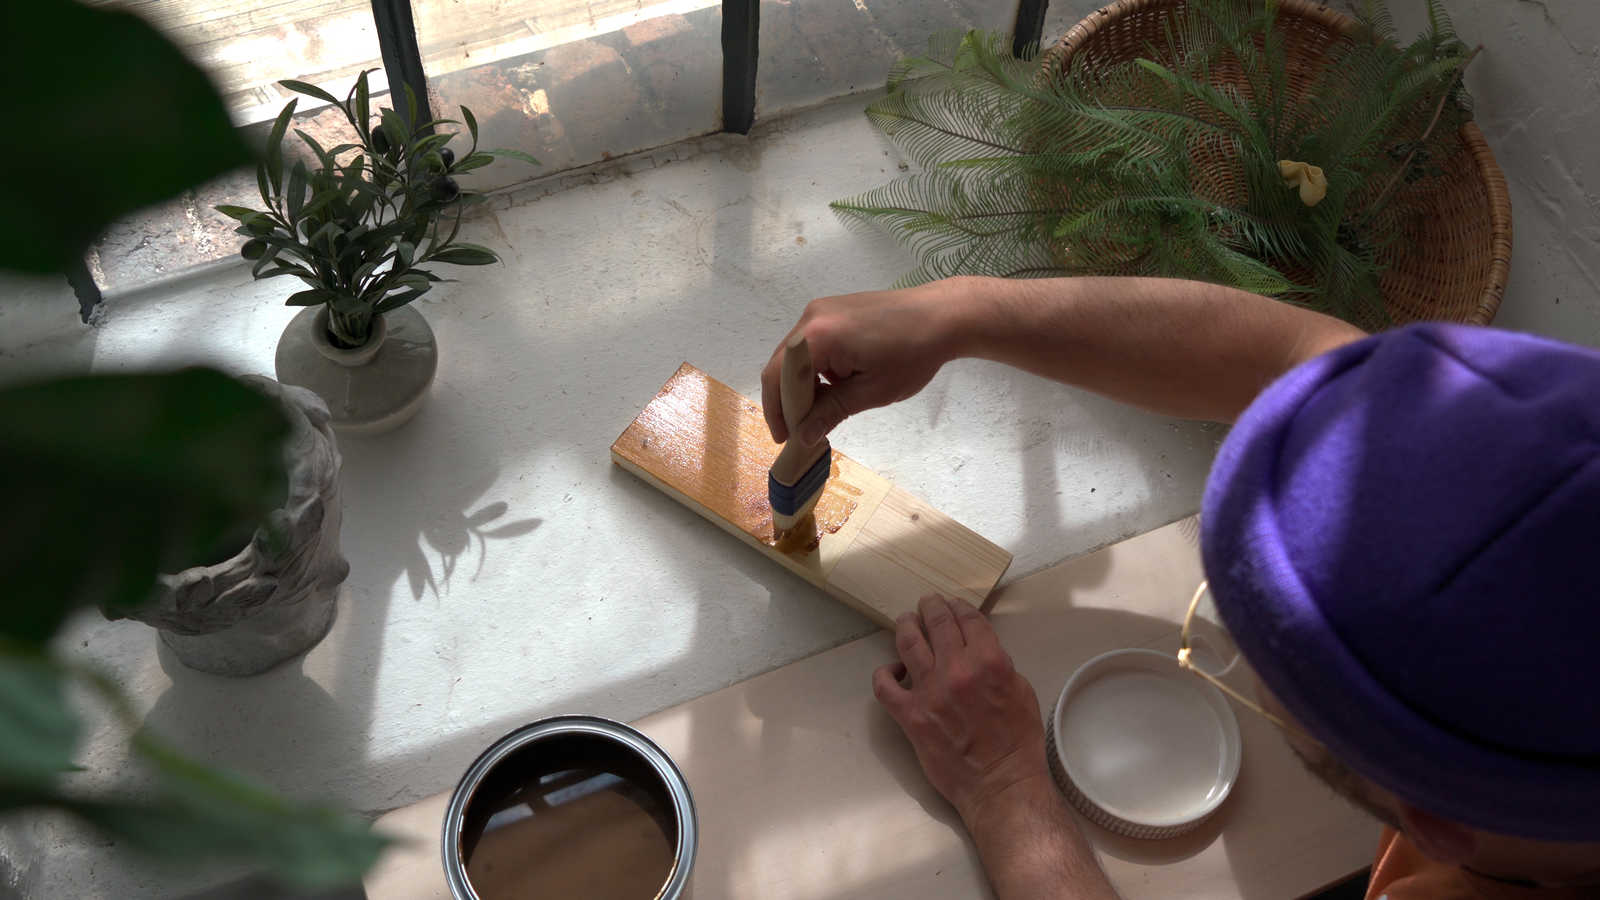             Holzlasur »Teak« seidenglänzend für Innen & Außen – 2,5 Liter
        